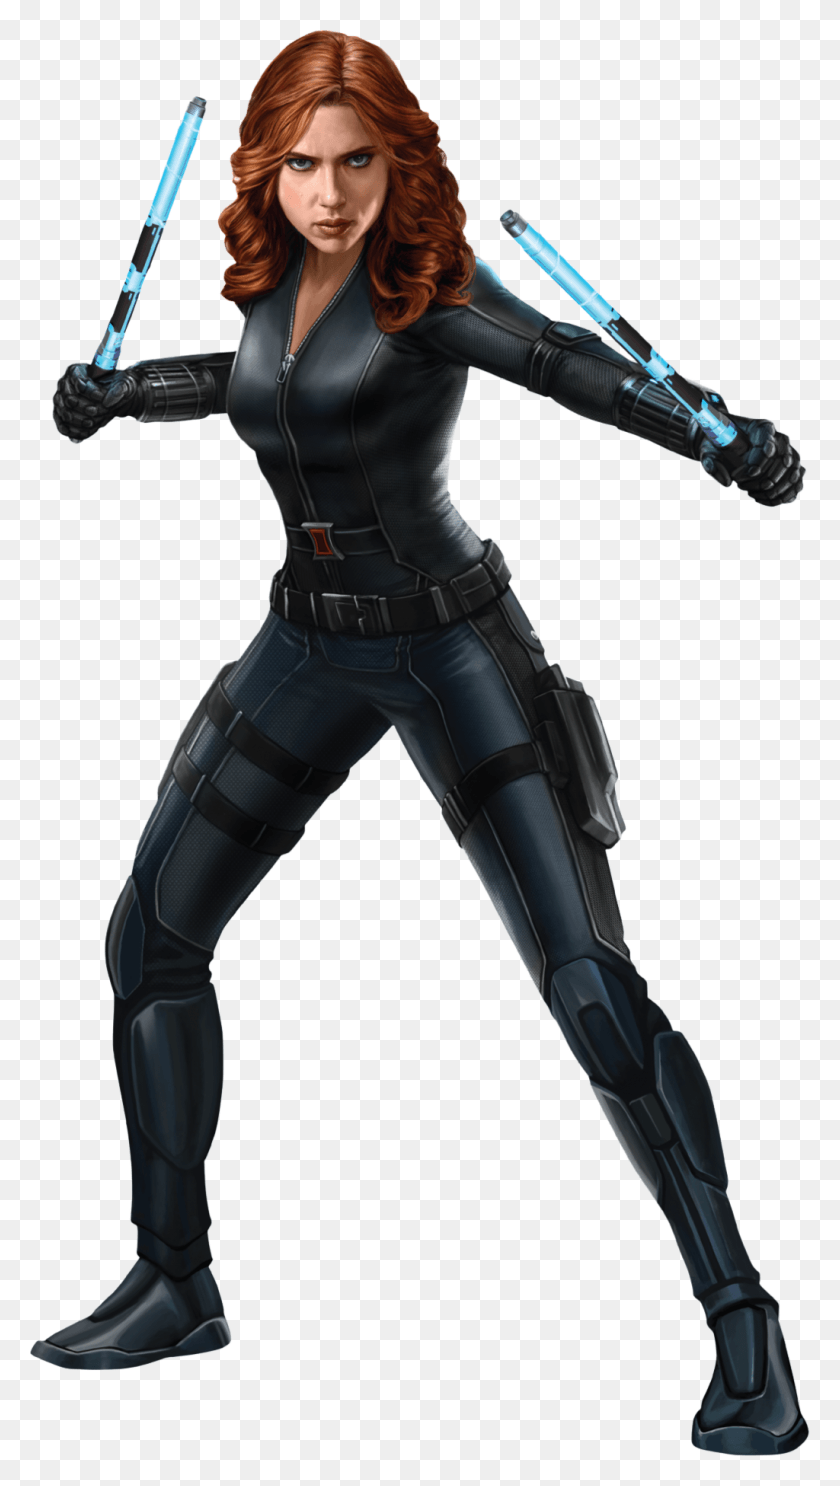 1024x1873 Marvel Black Widow Icon Viuda Negra De Cuerpo Completo, Ninja, Persona, Humano Hd Png